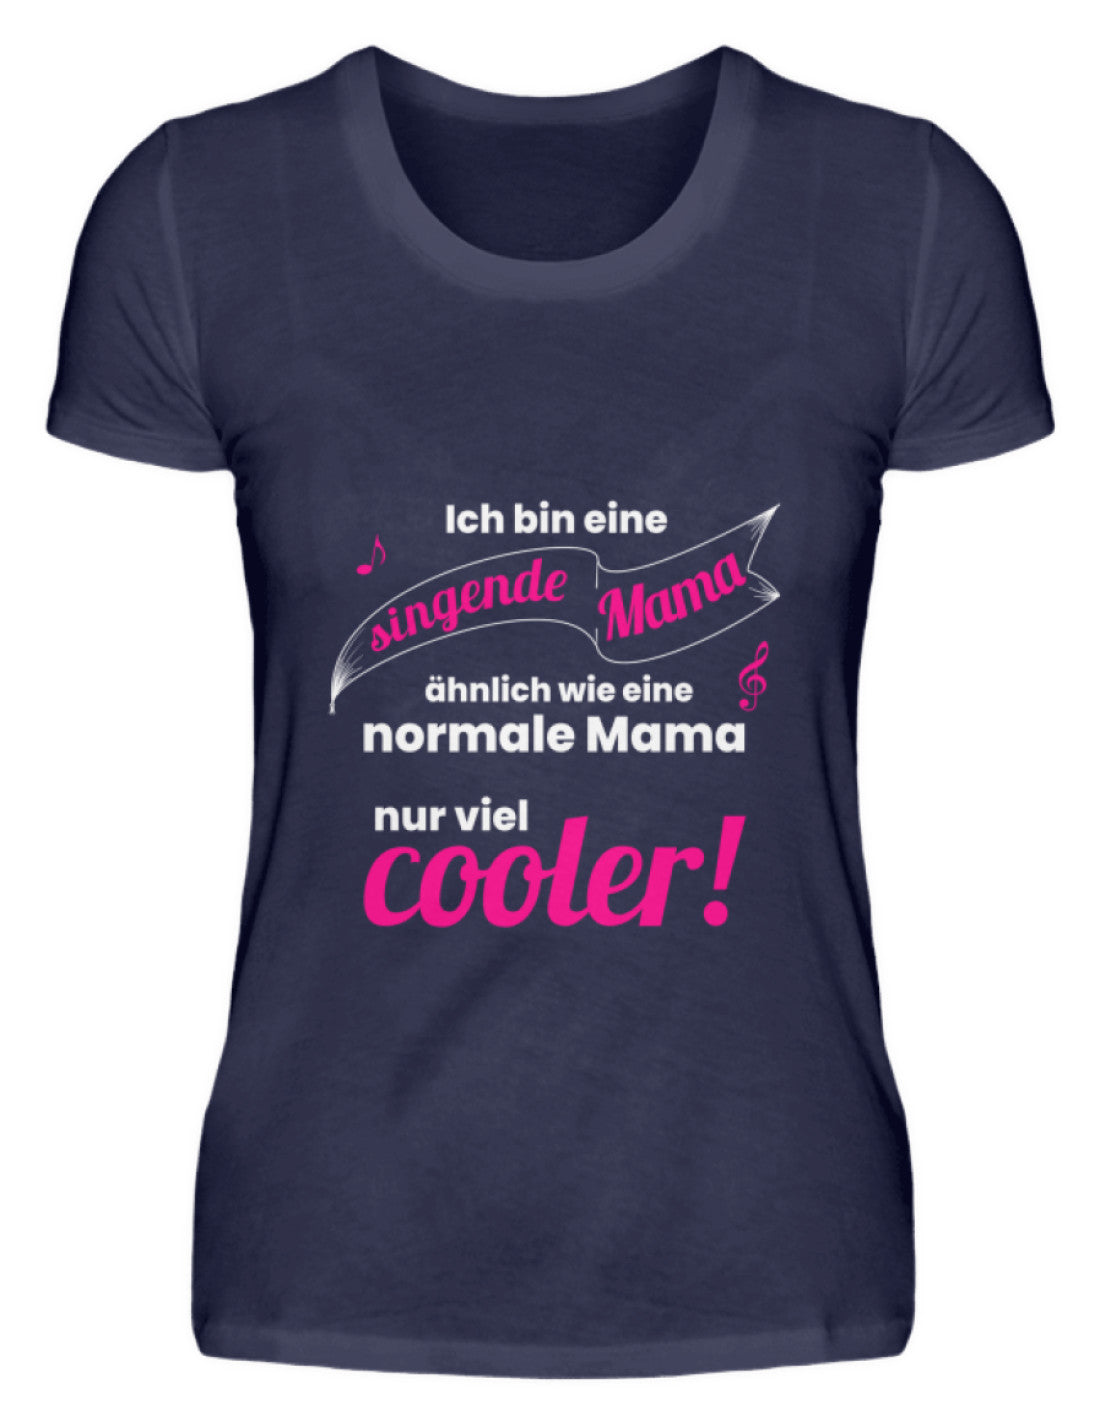 Chor T-Shirt Mutter Sänger Mama